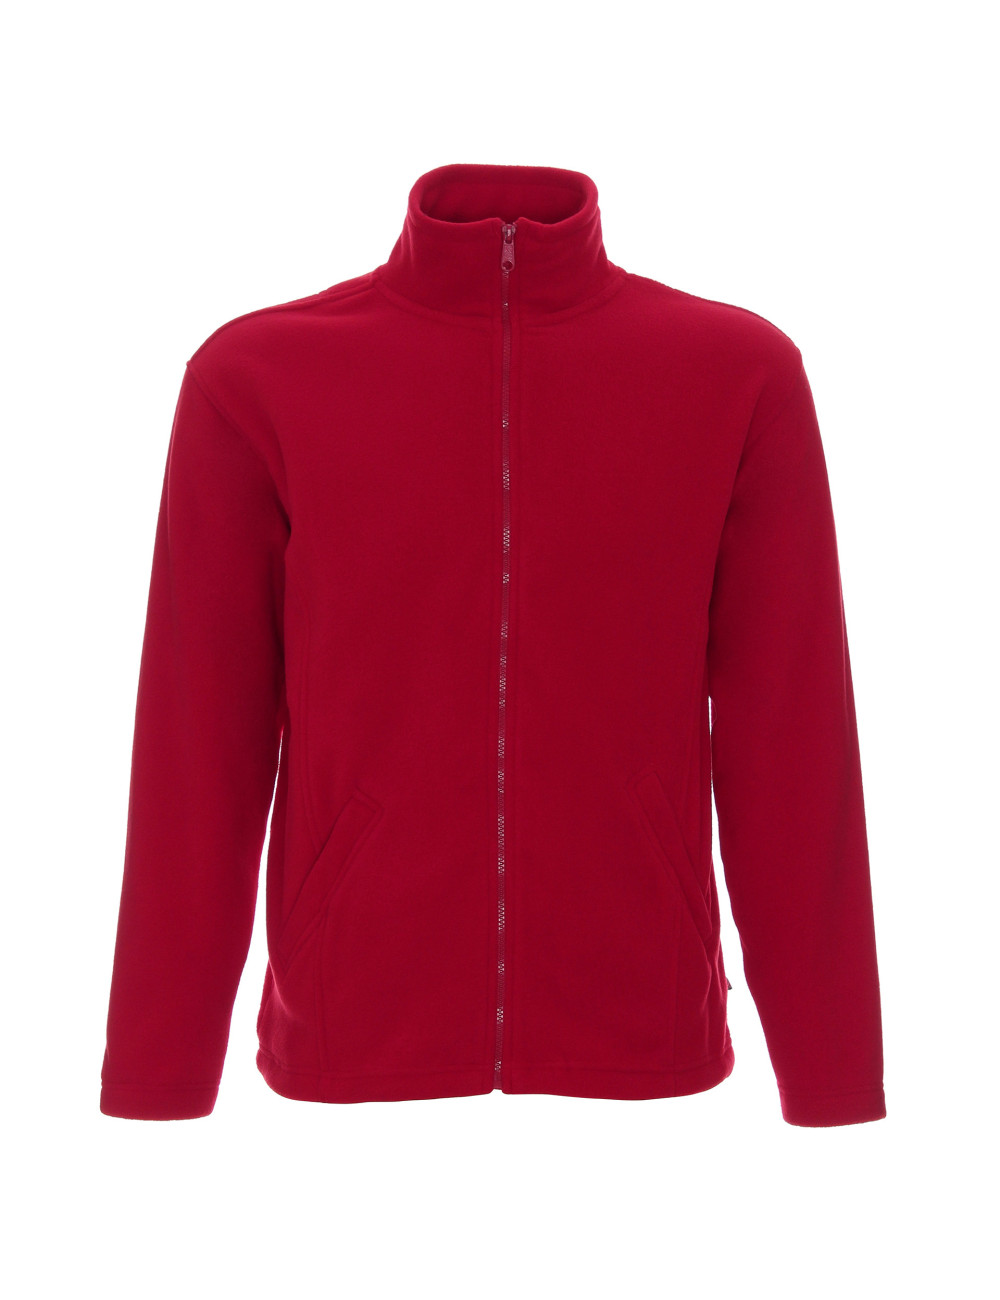 Herren-Fleece-Sweatshirt 280 g doppelt rot Promostars